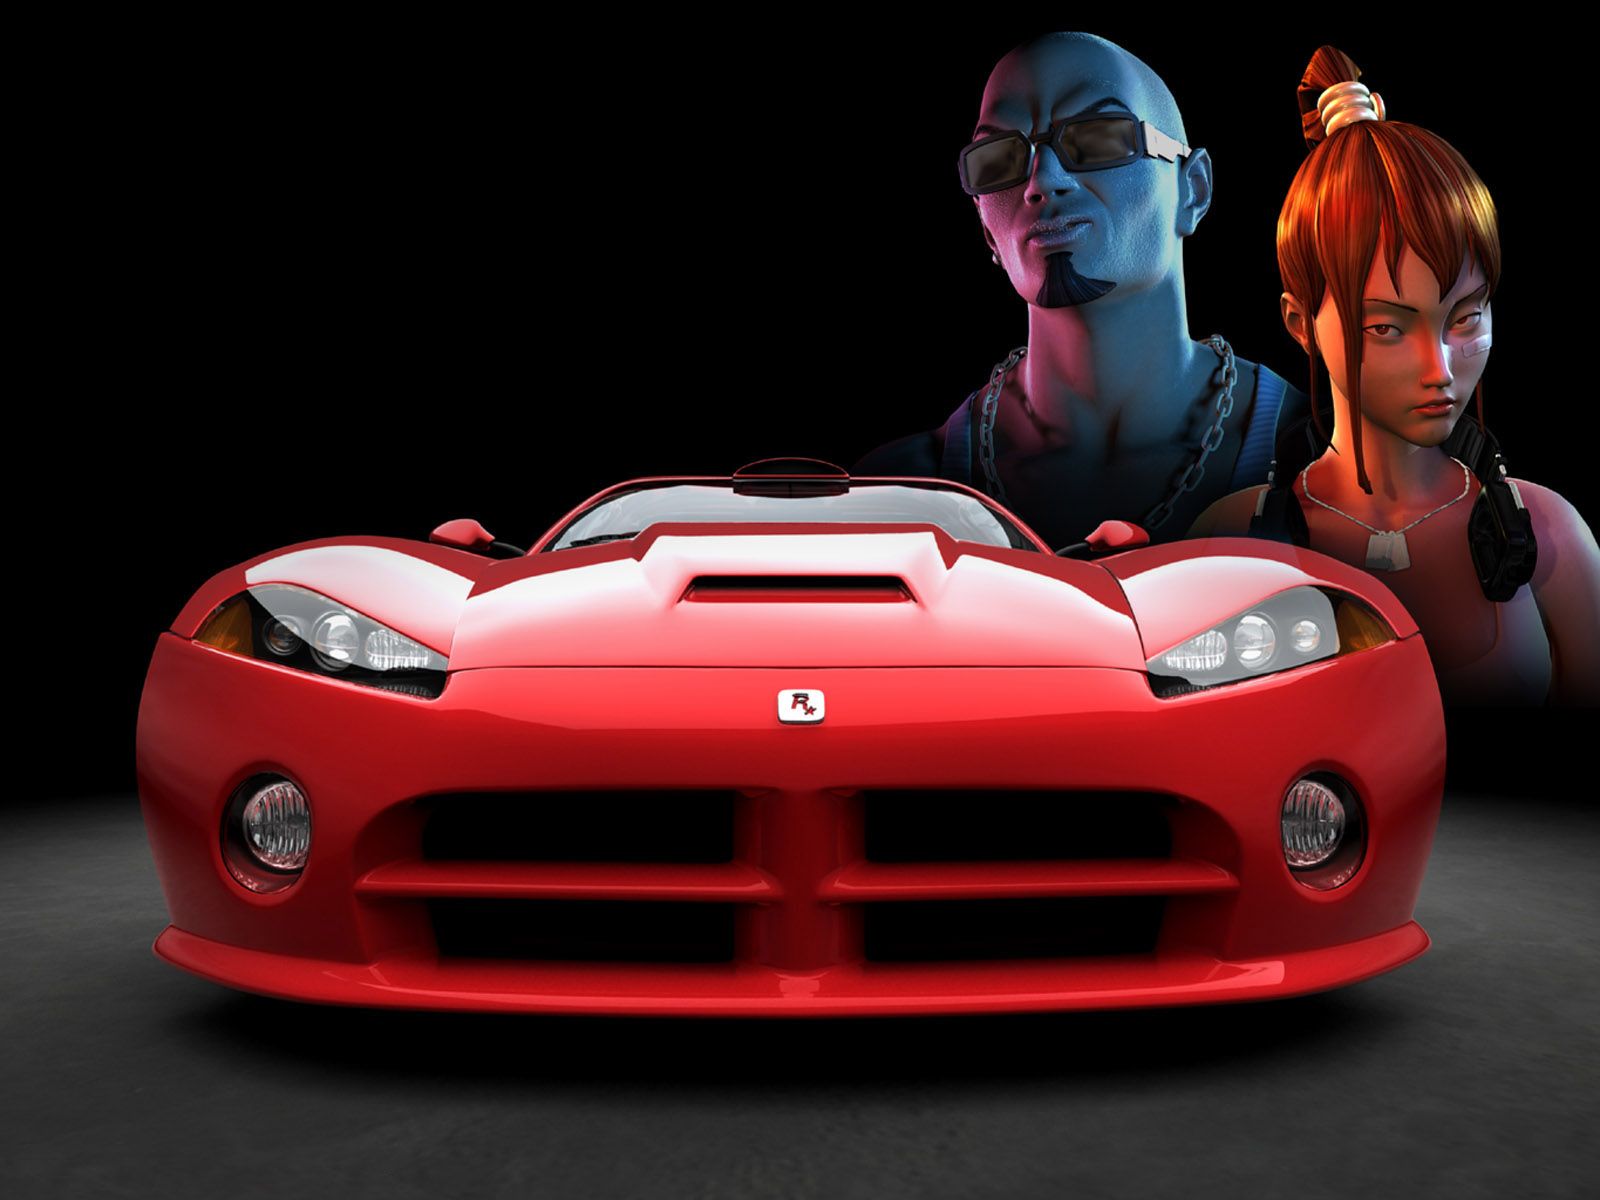 تصویر زمینه جالب و زیبا از ماشین قرمز با زن و مردی در کنار آن